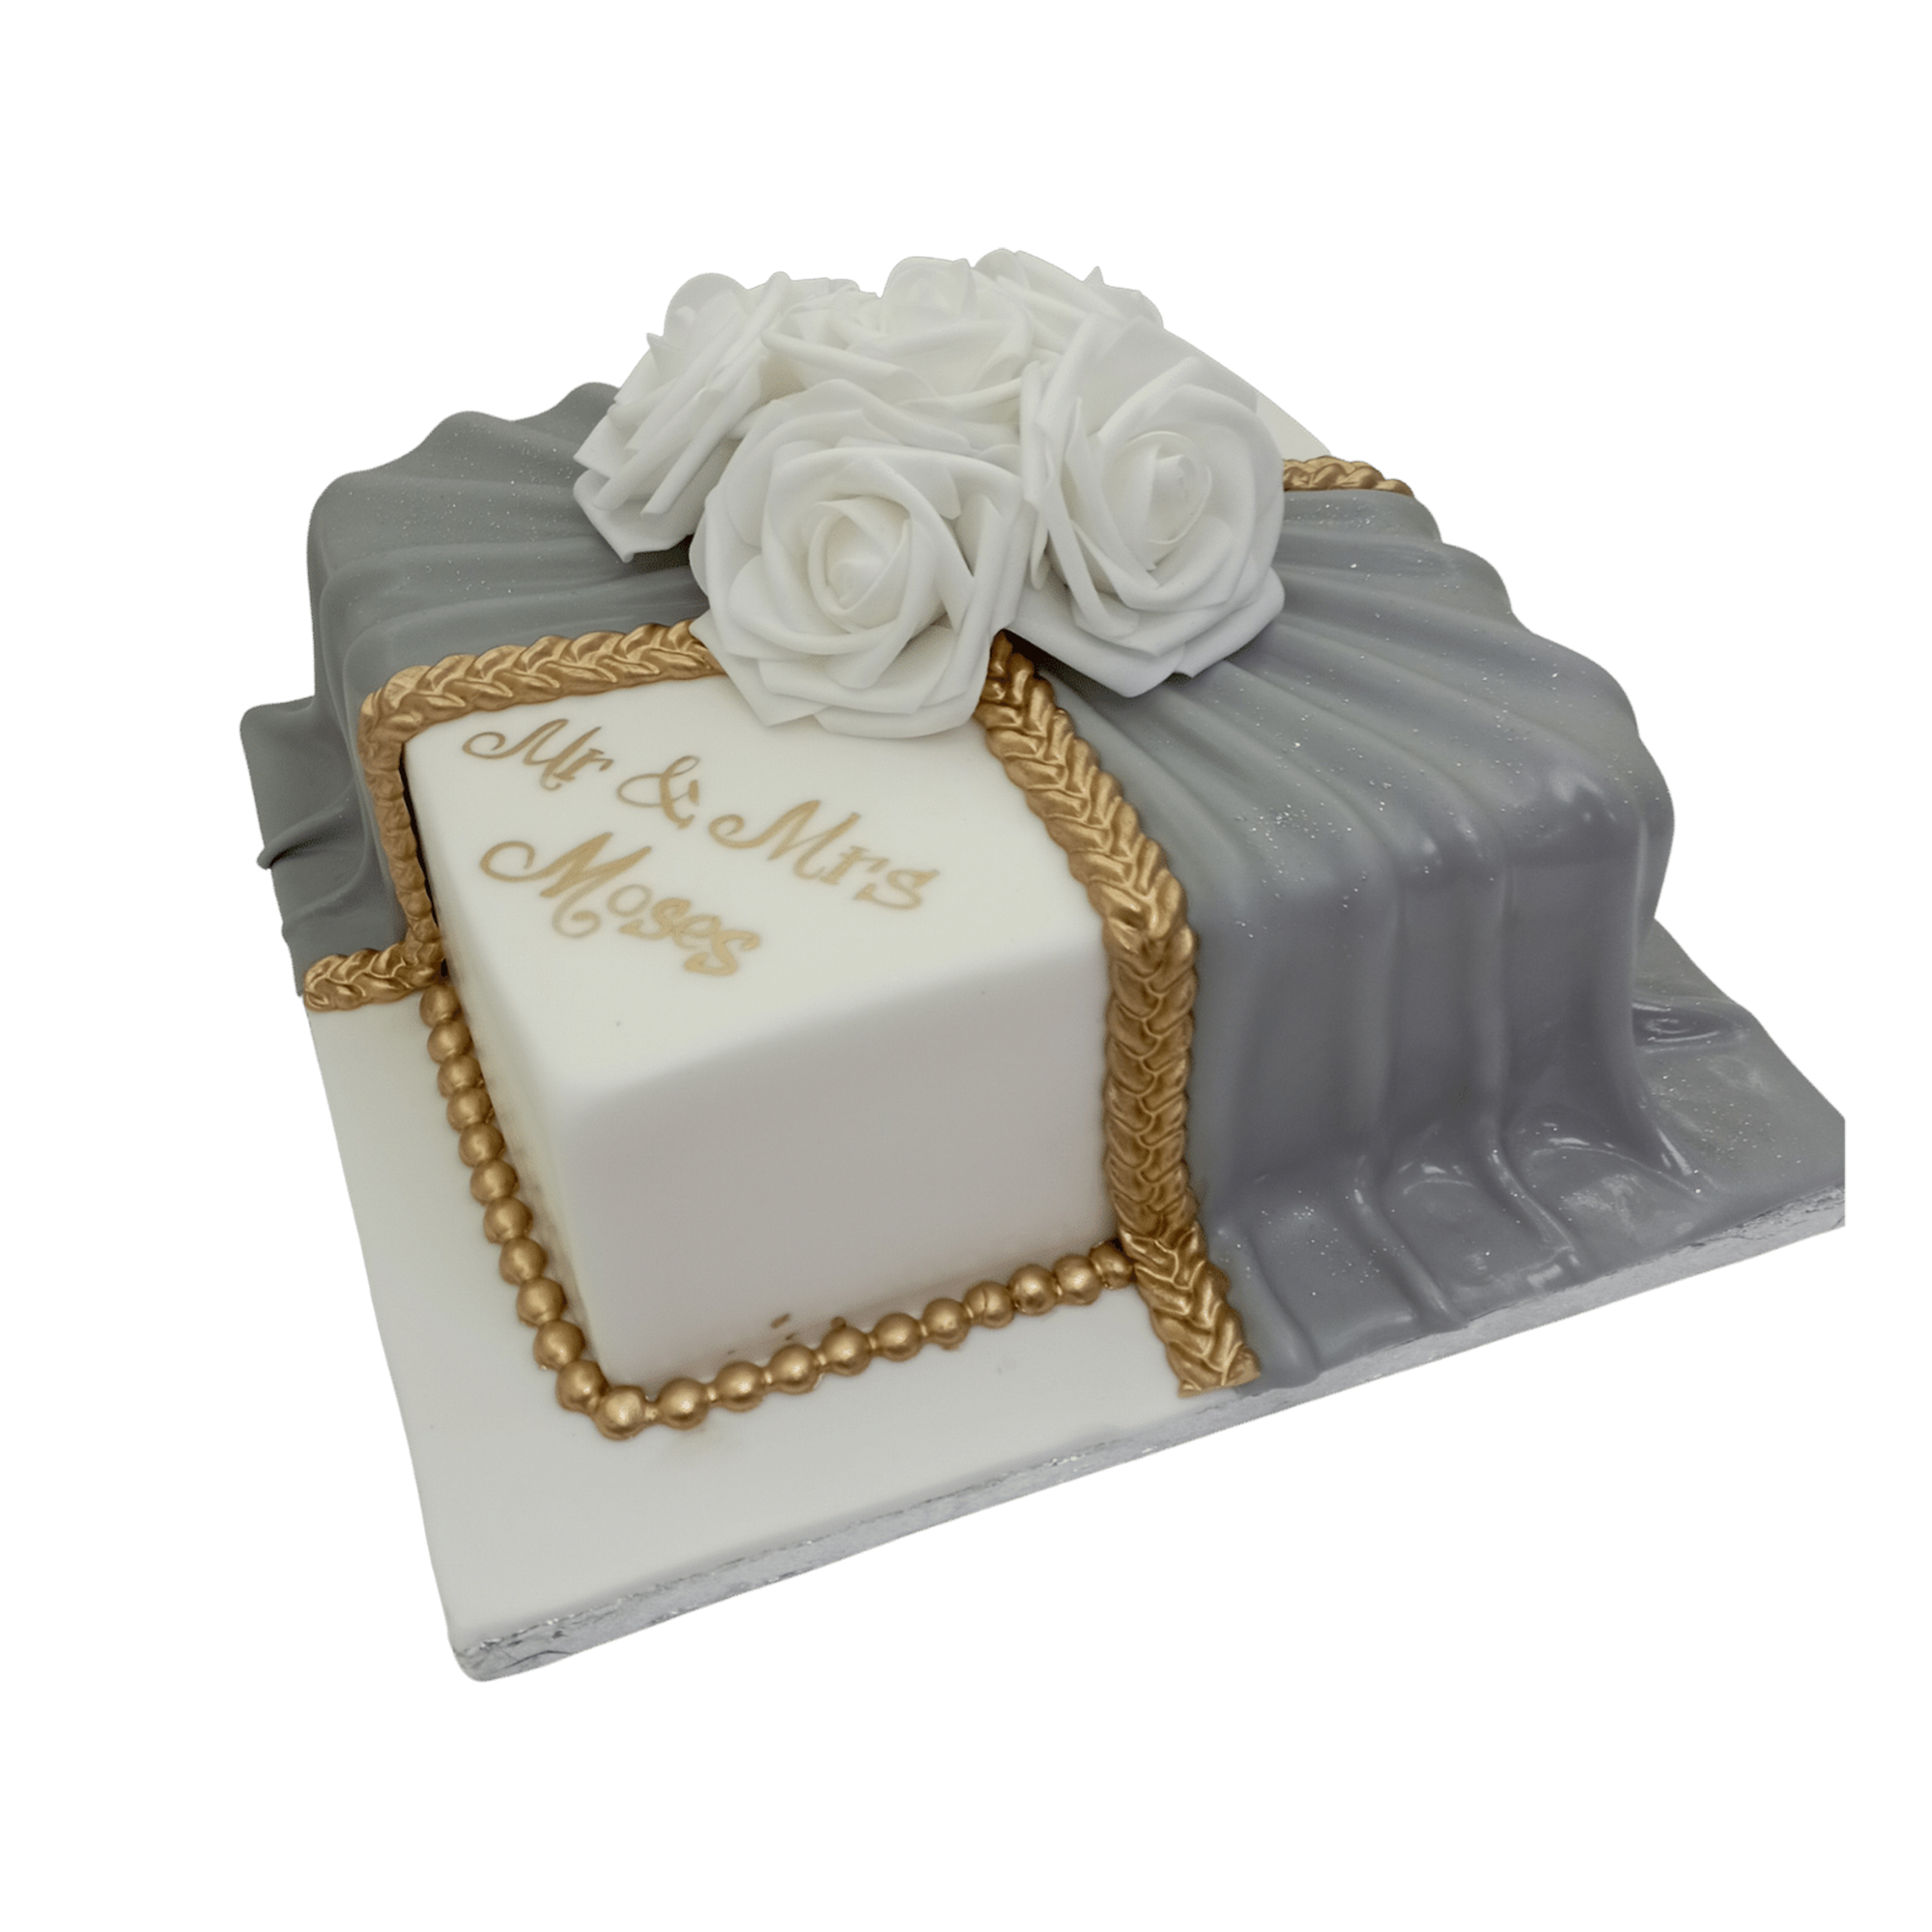 Square Shaped Wedding Cake 